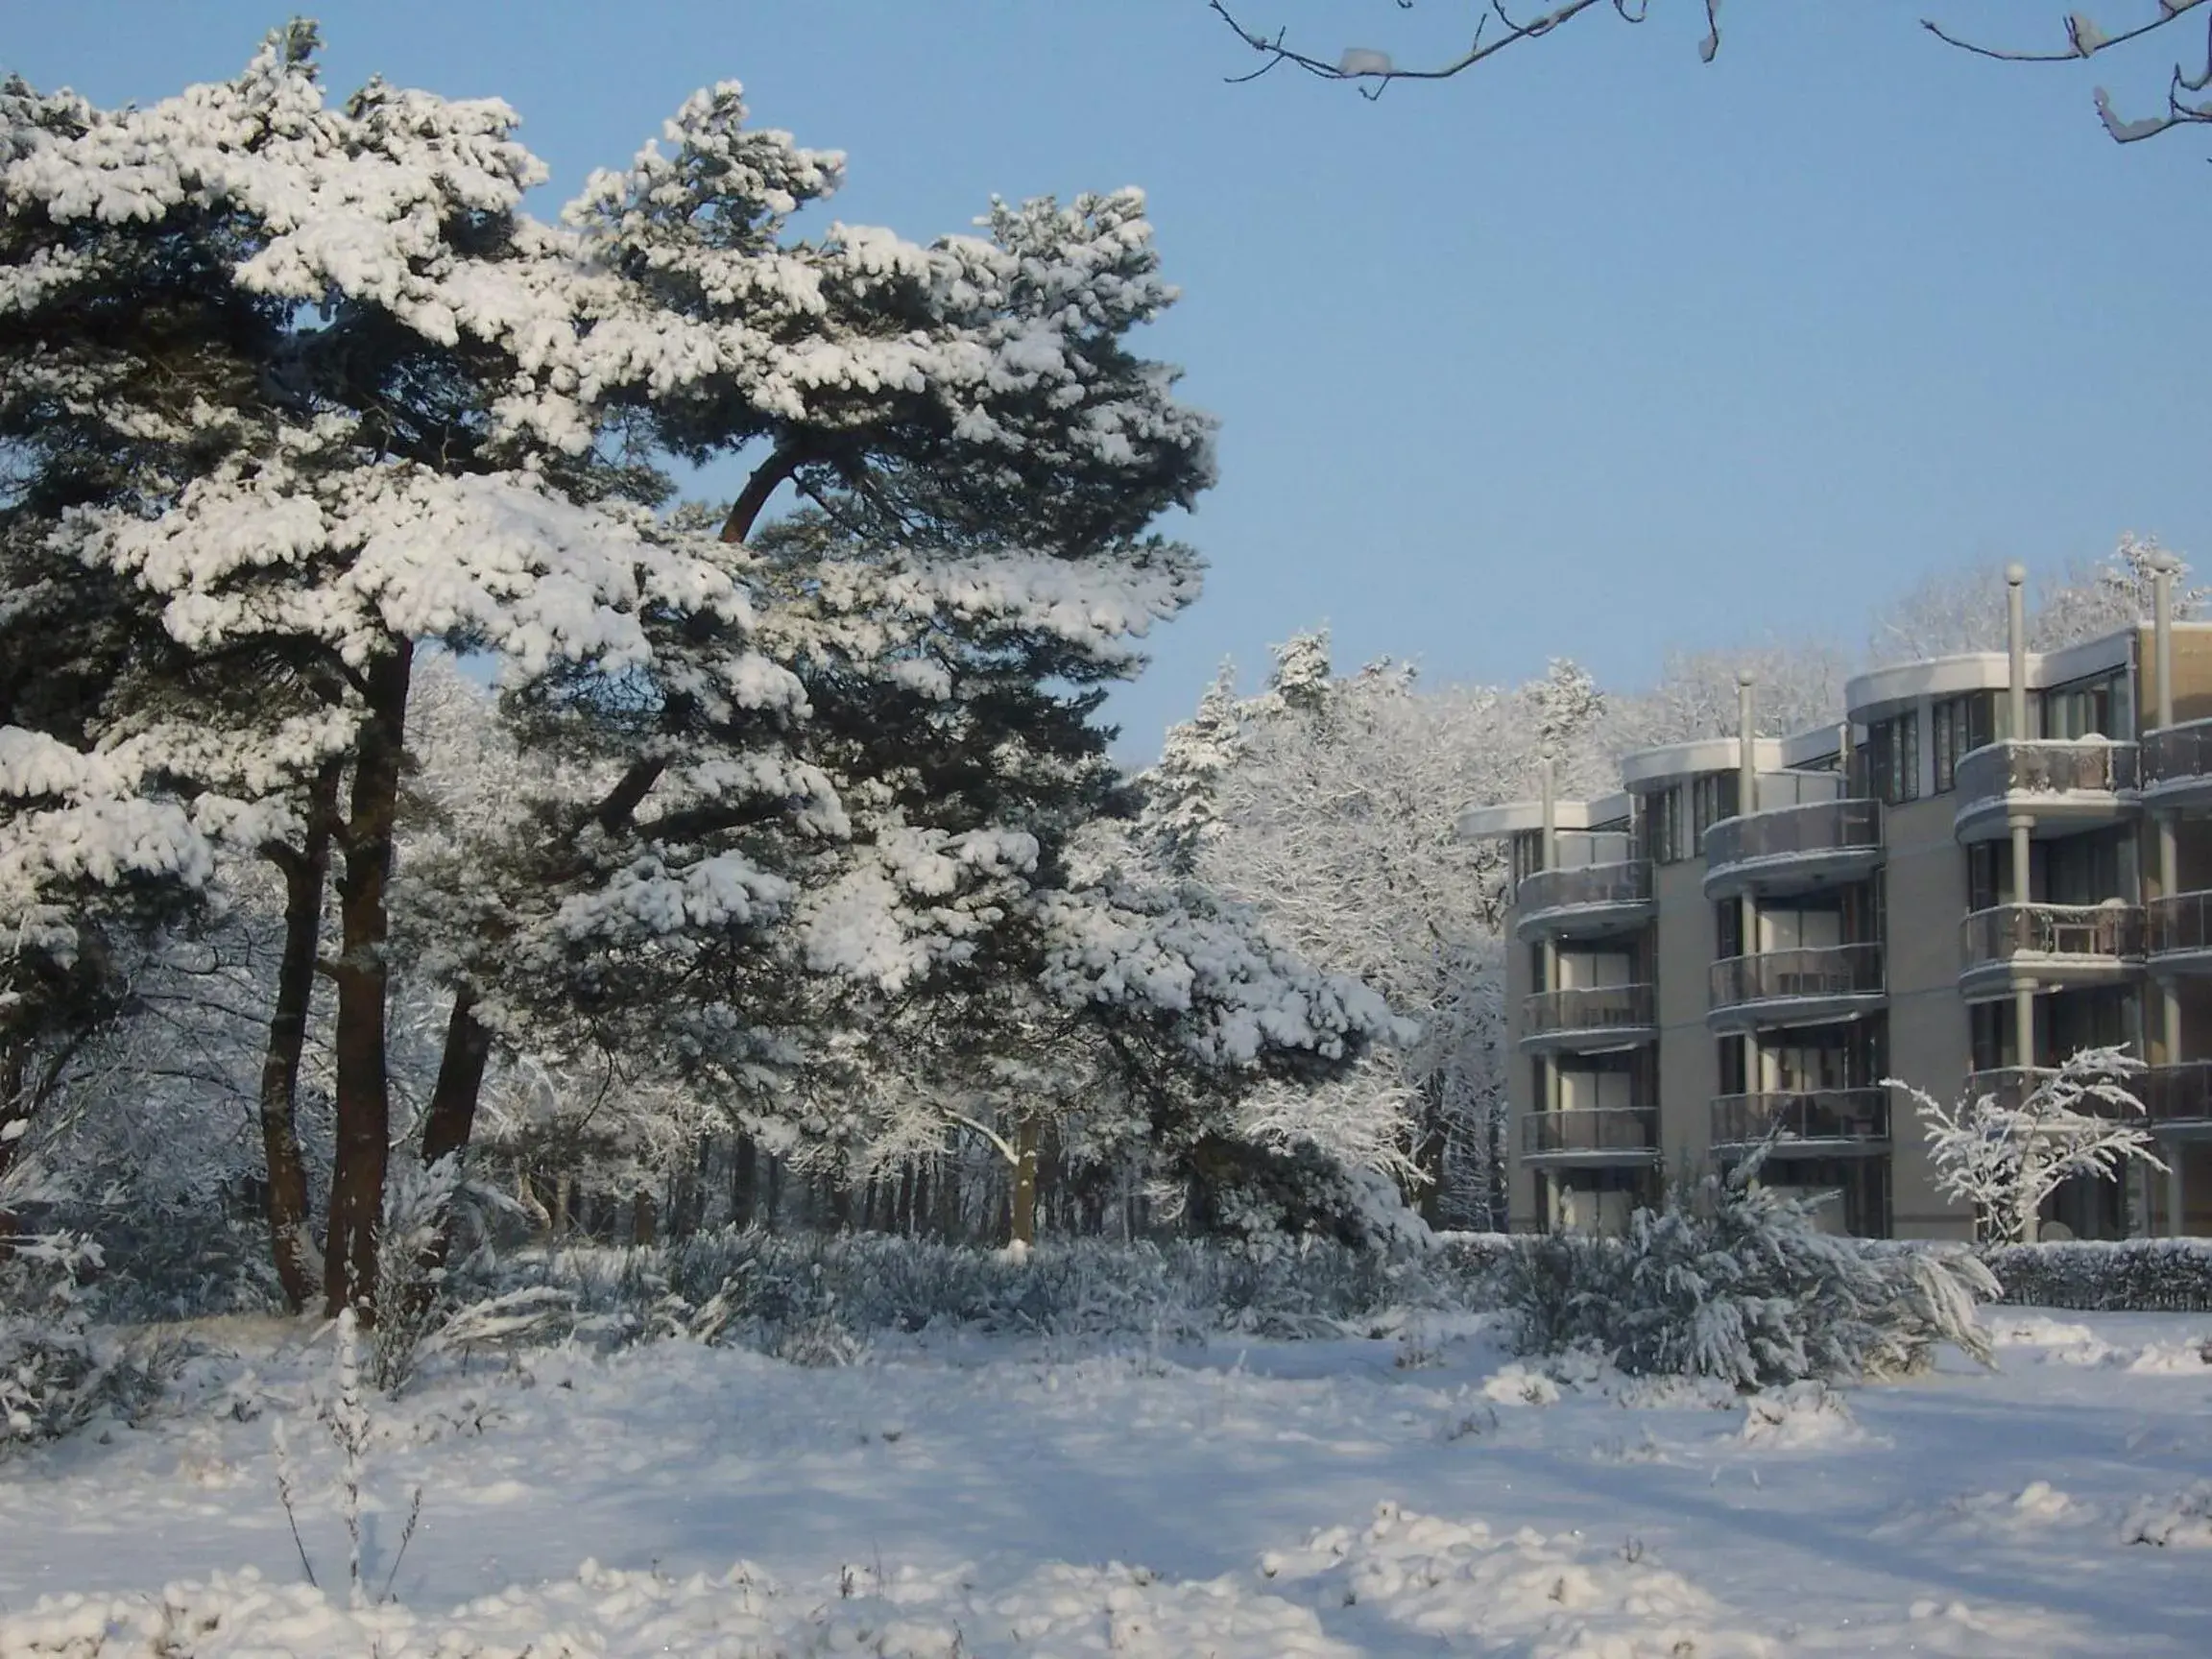 Property building, Winter in Resort Bad Boekelo